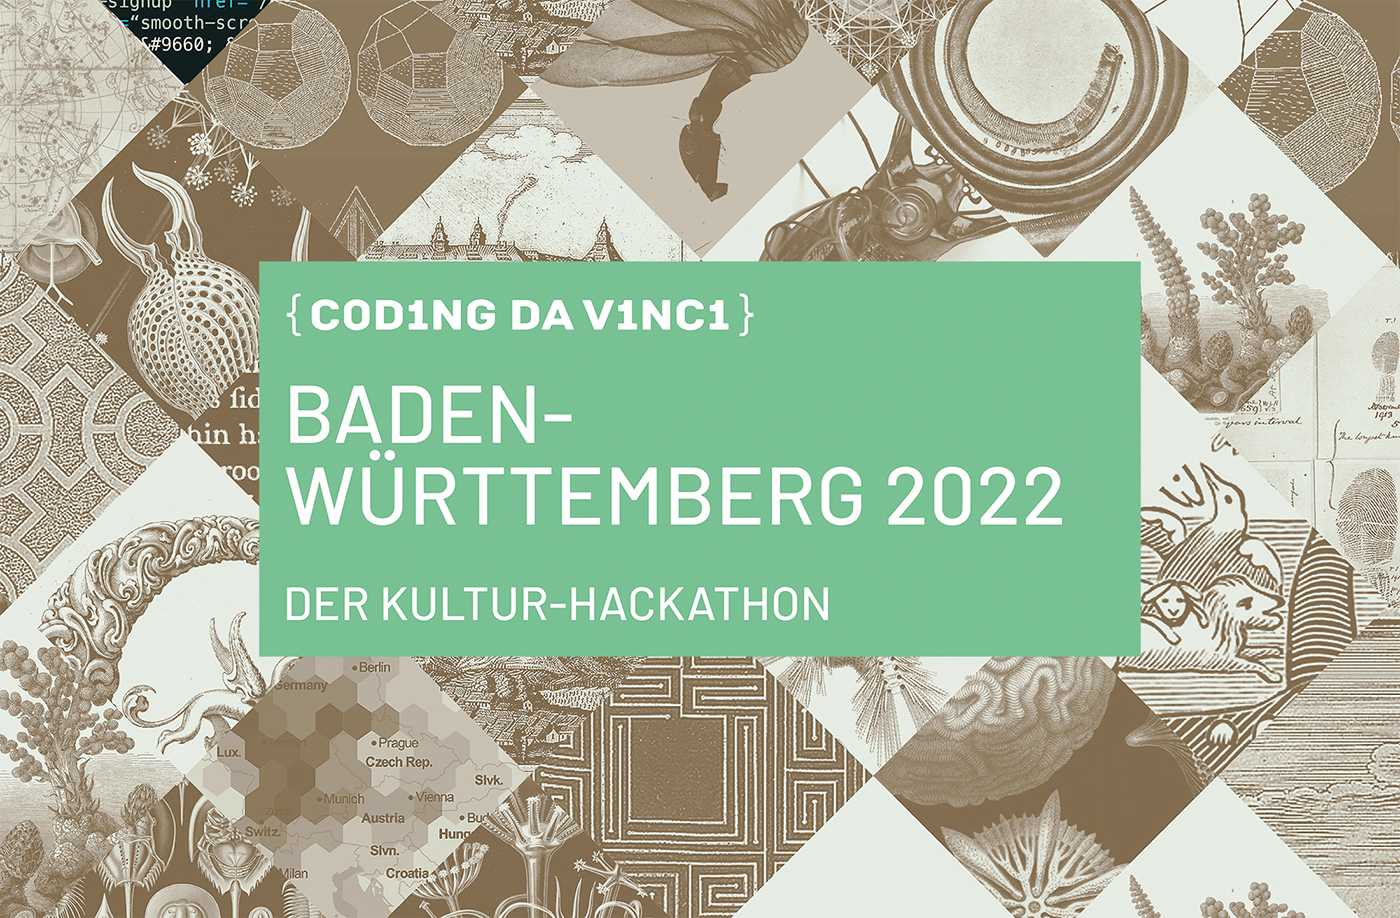 Eine mintfarbener Hintergrund mit dem Text »Coding da Vinci Baden-Württemberg 2022« in Weiß